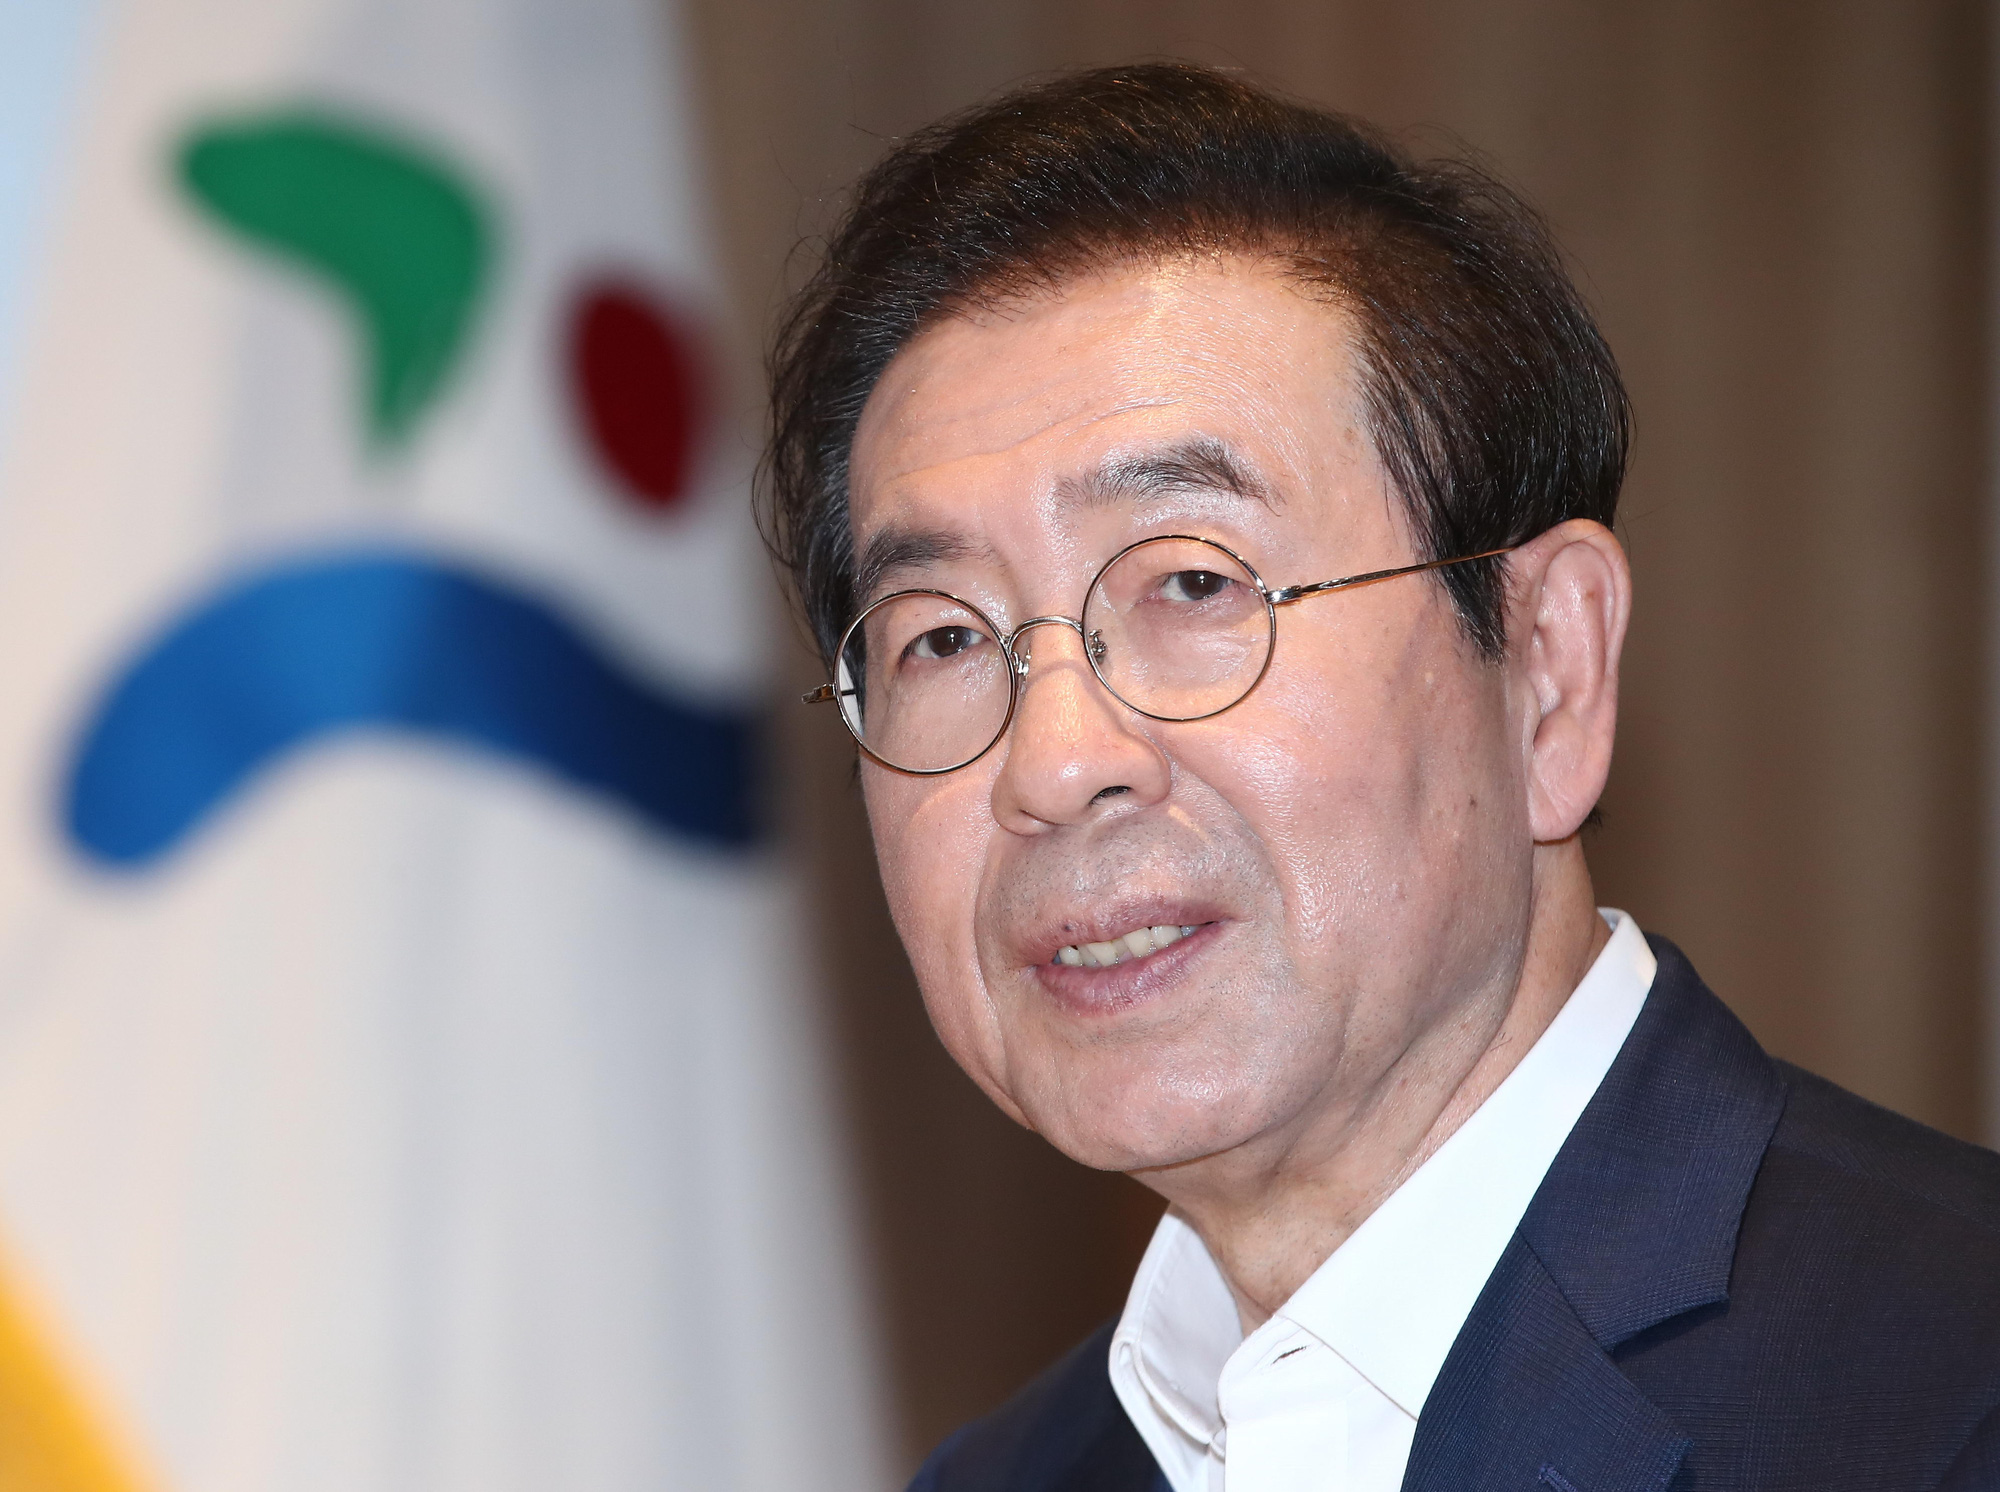 Cựu thư ký lần đầu công khai lên tiếng về hành vi quấy rối tình dục của Thị trưởng Seoul quá cố, tiết lộ nhiều việc làm gây bức xúc - Ảnh 1.